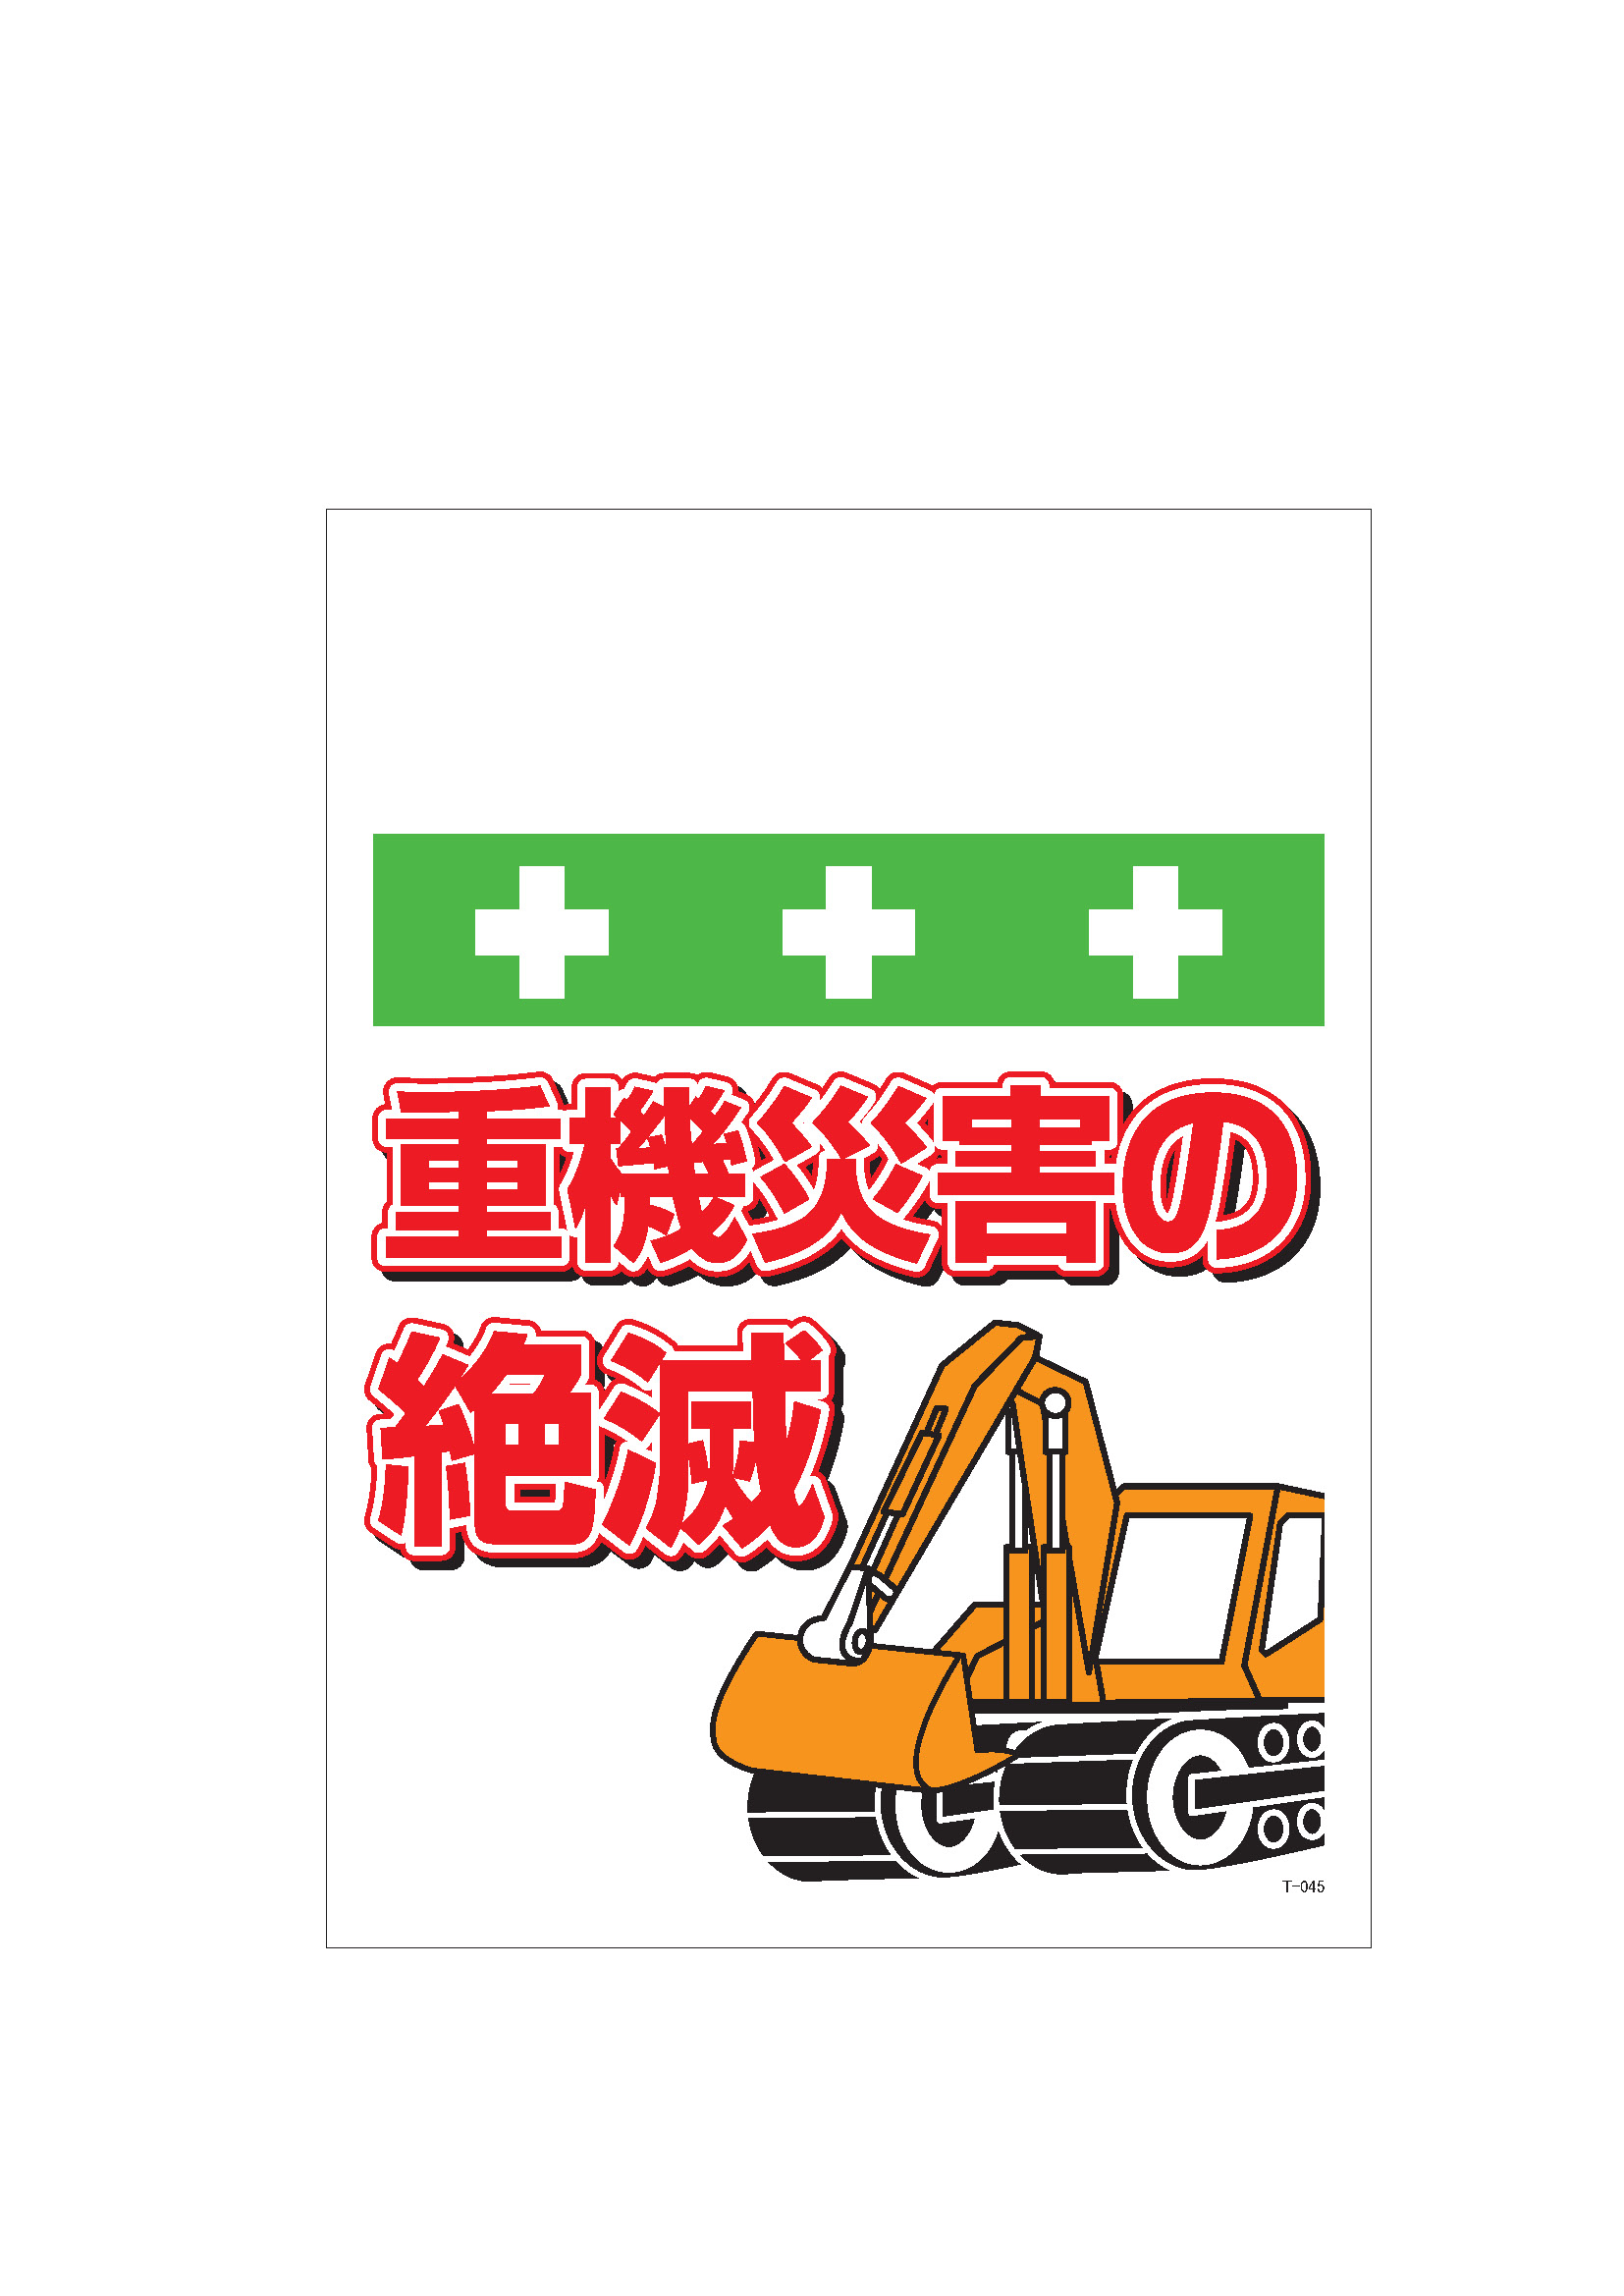 (個別送料1000円)(直送品)サカエ SAKAE オプションキャスターセット ST-100CS - 4